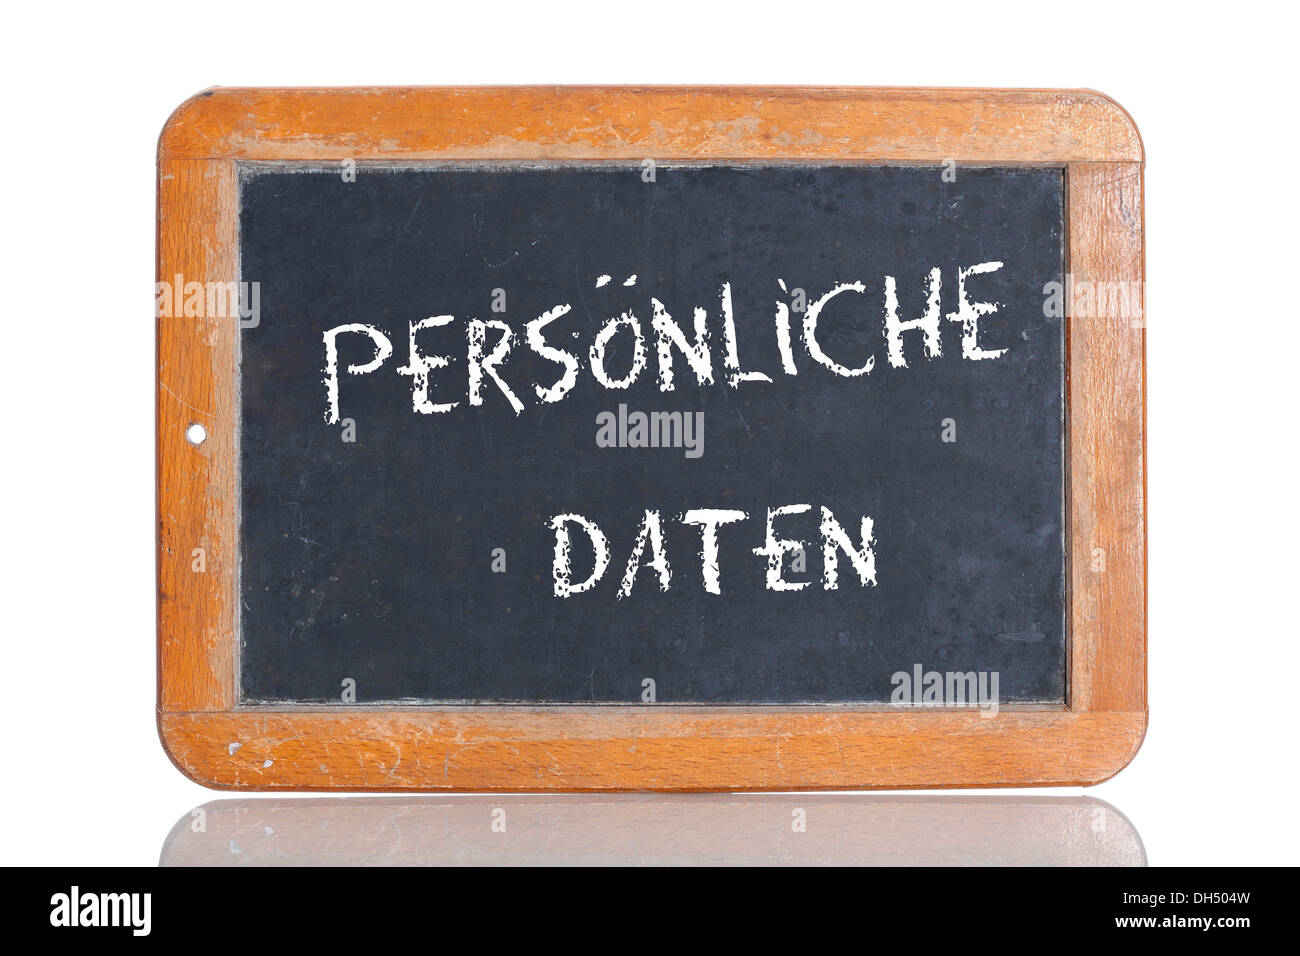 Vecchia lavagna, lettering "PERSOENLICHE DATEN', tedesco per "dati personali" Foto Stock